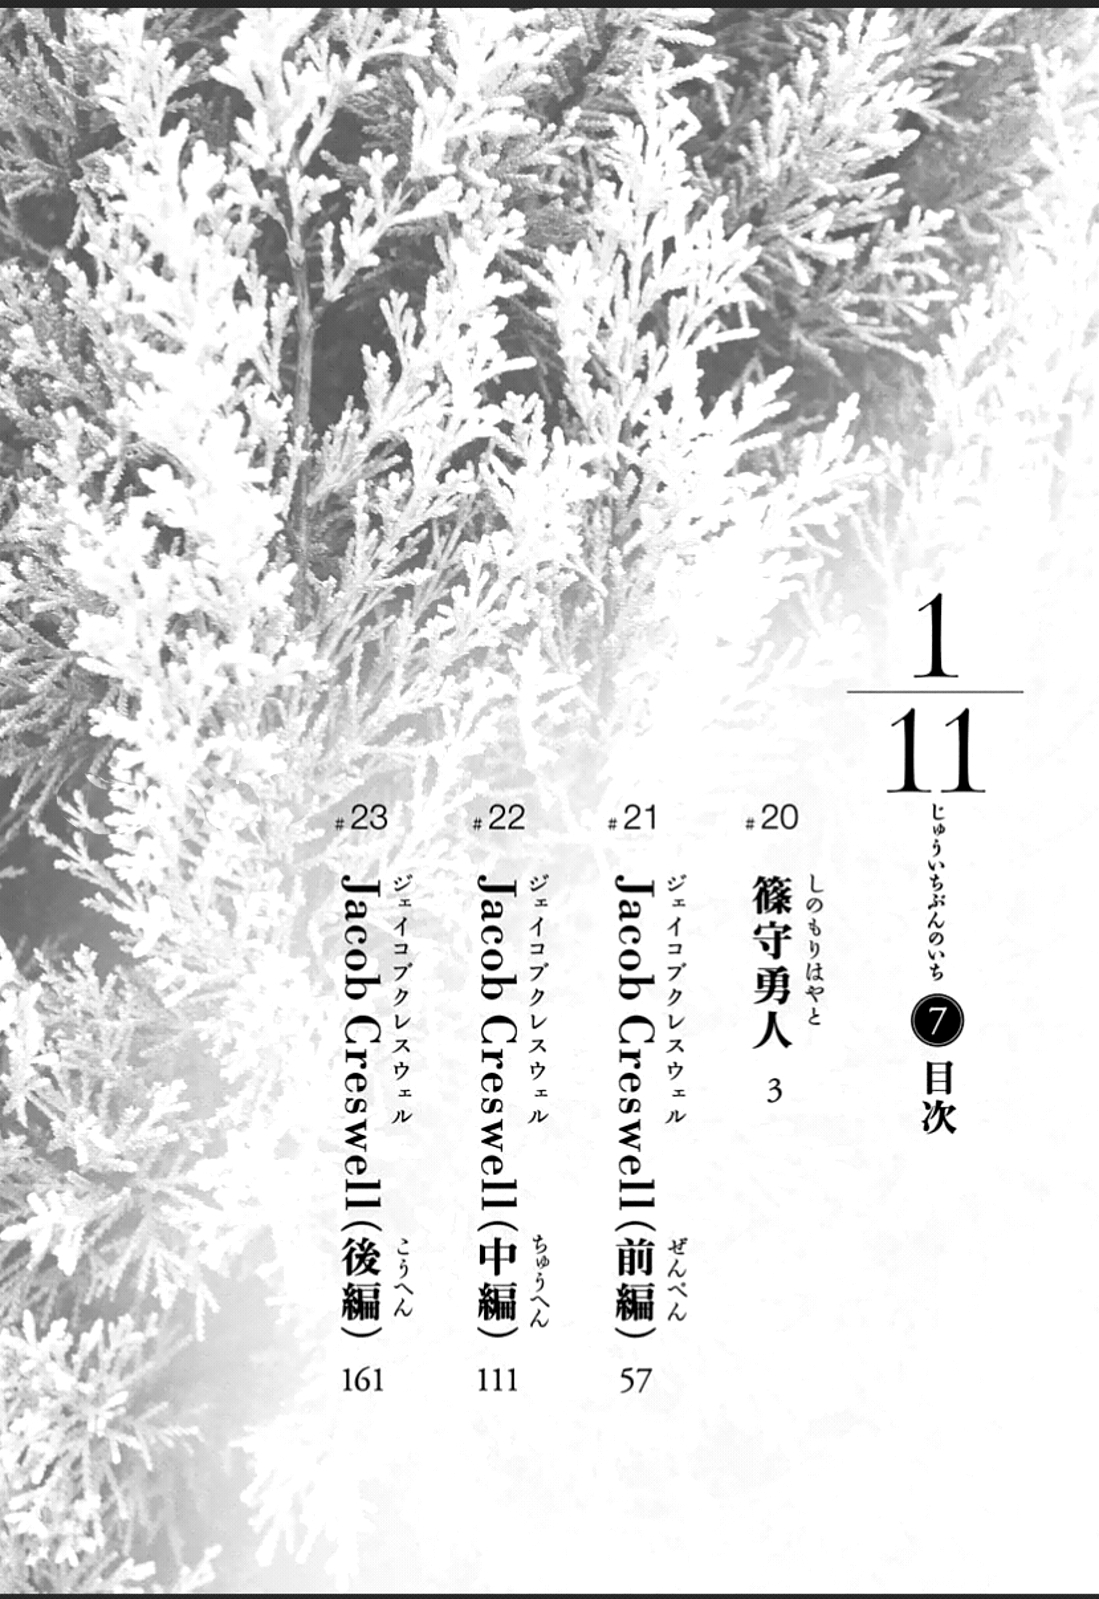 1/11 Vol. 7 Ch. 20 Shinomori Hayato